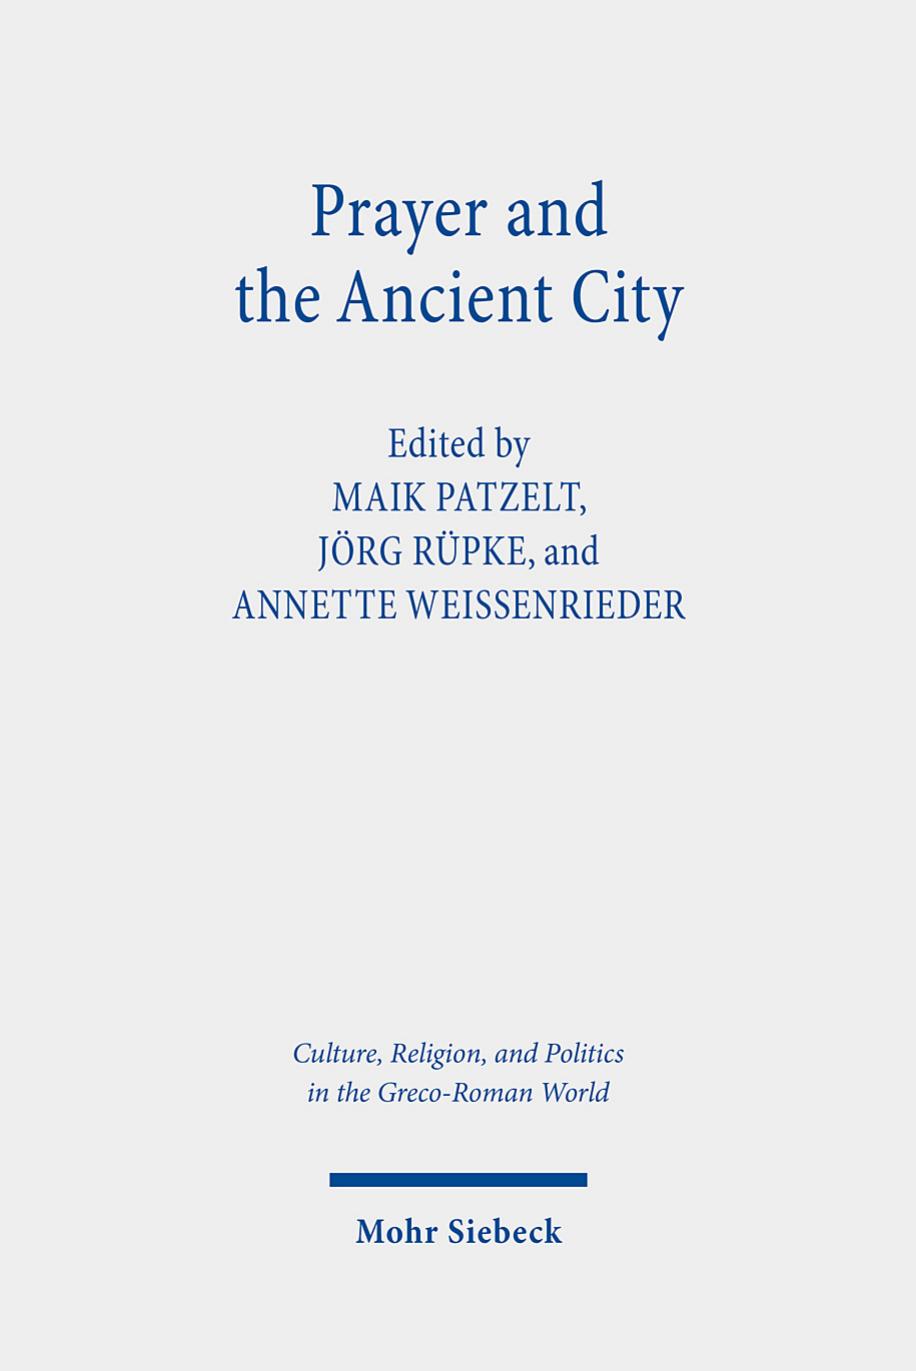 Prayer and the Ancient City by Maik Patzelt / Jörg Rüpke / Annette Weissenrieder